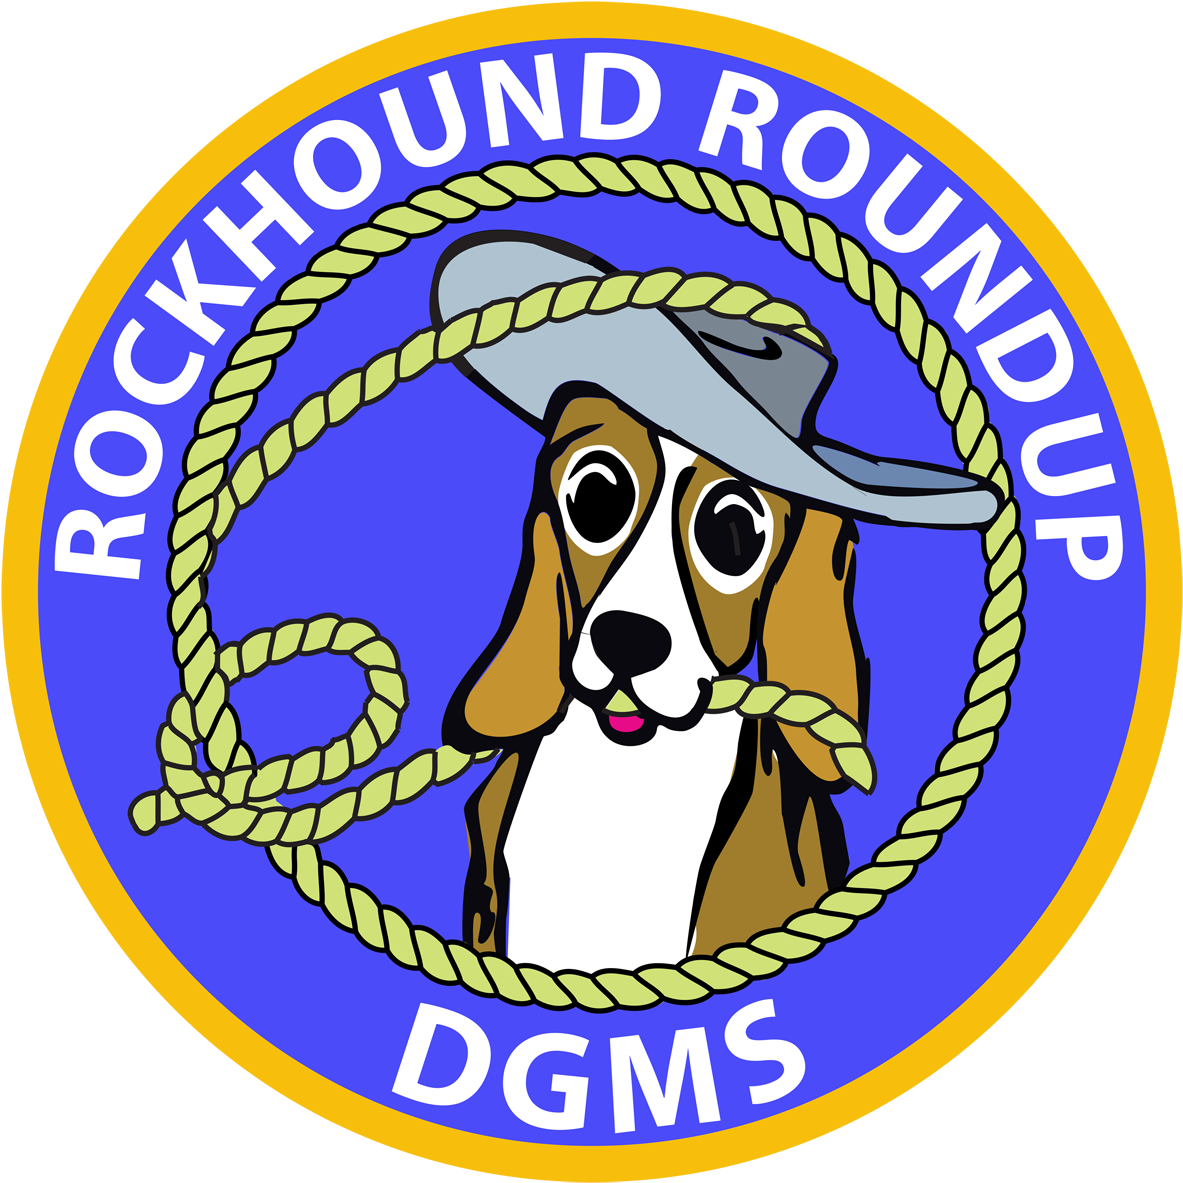 54th Annual Rockhound Roundup - Uss Enterprise Cvn 65 (1200x1200)